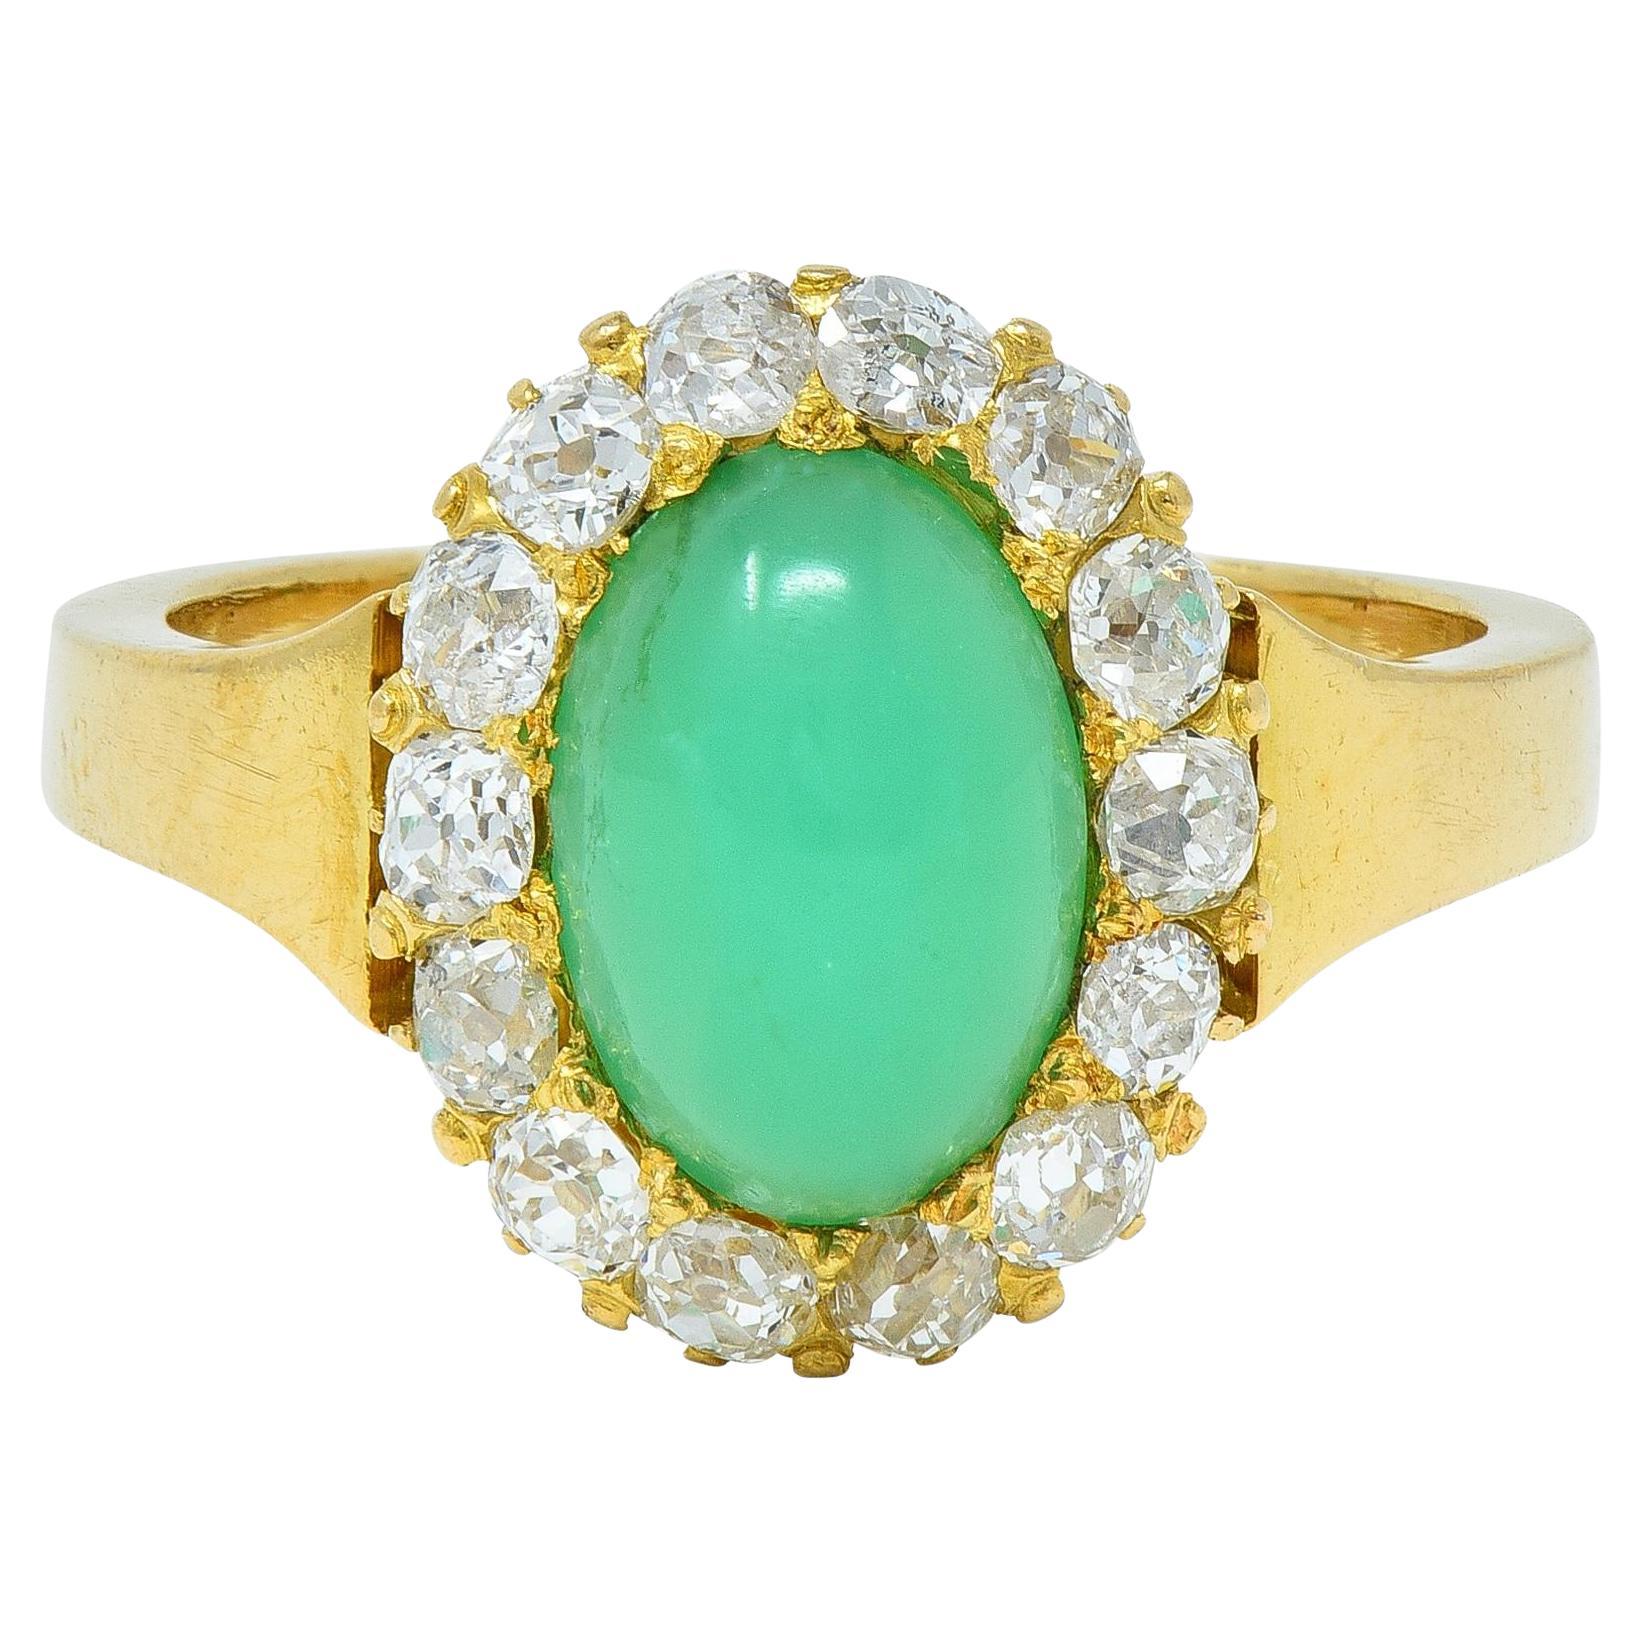 Modernistischer modernistischer Halo-Ring mit Chrysopras und Diamant aus 18 Karat Gelbgold